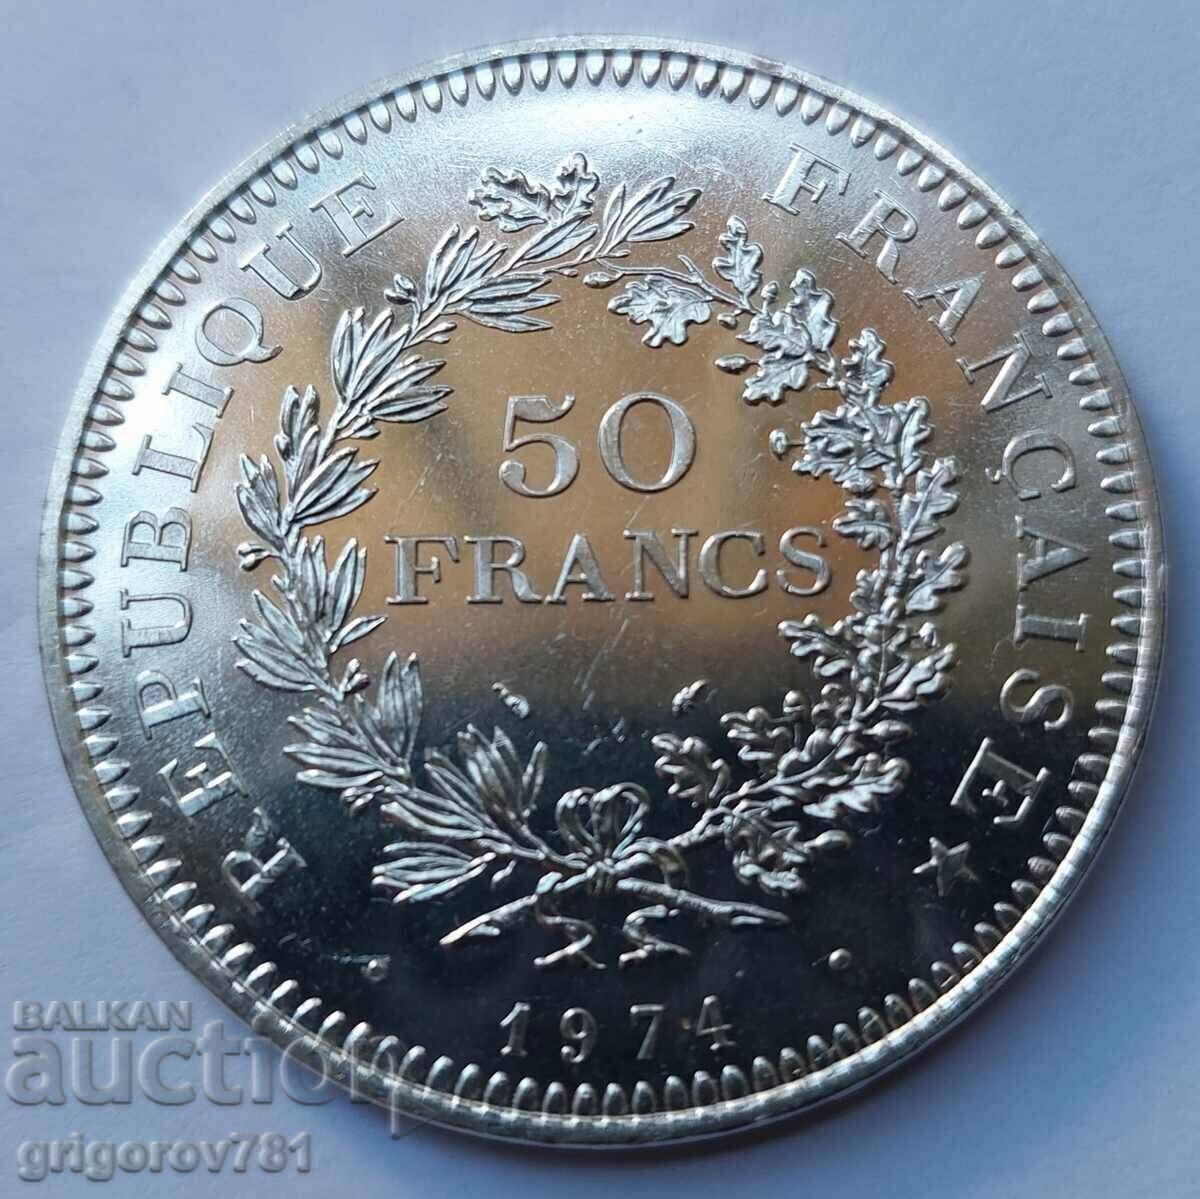 50 Franci Argint Franta 1974 - Moneda de argint #17